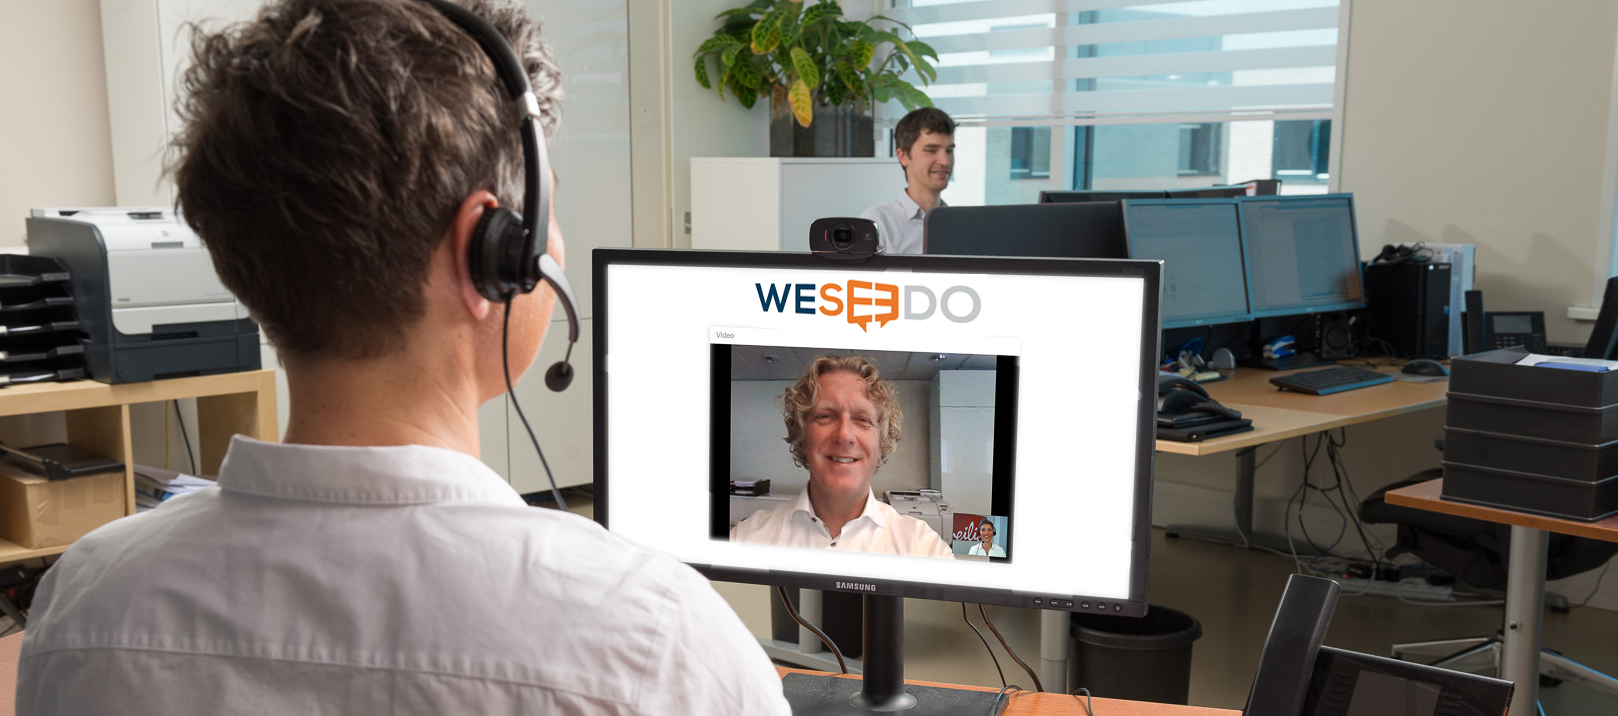 Online support - Webcare - WebRTC 